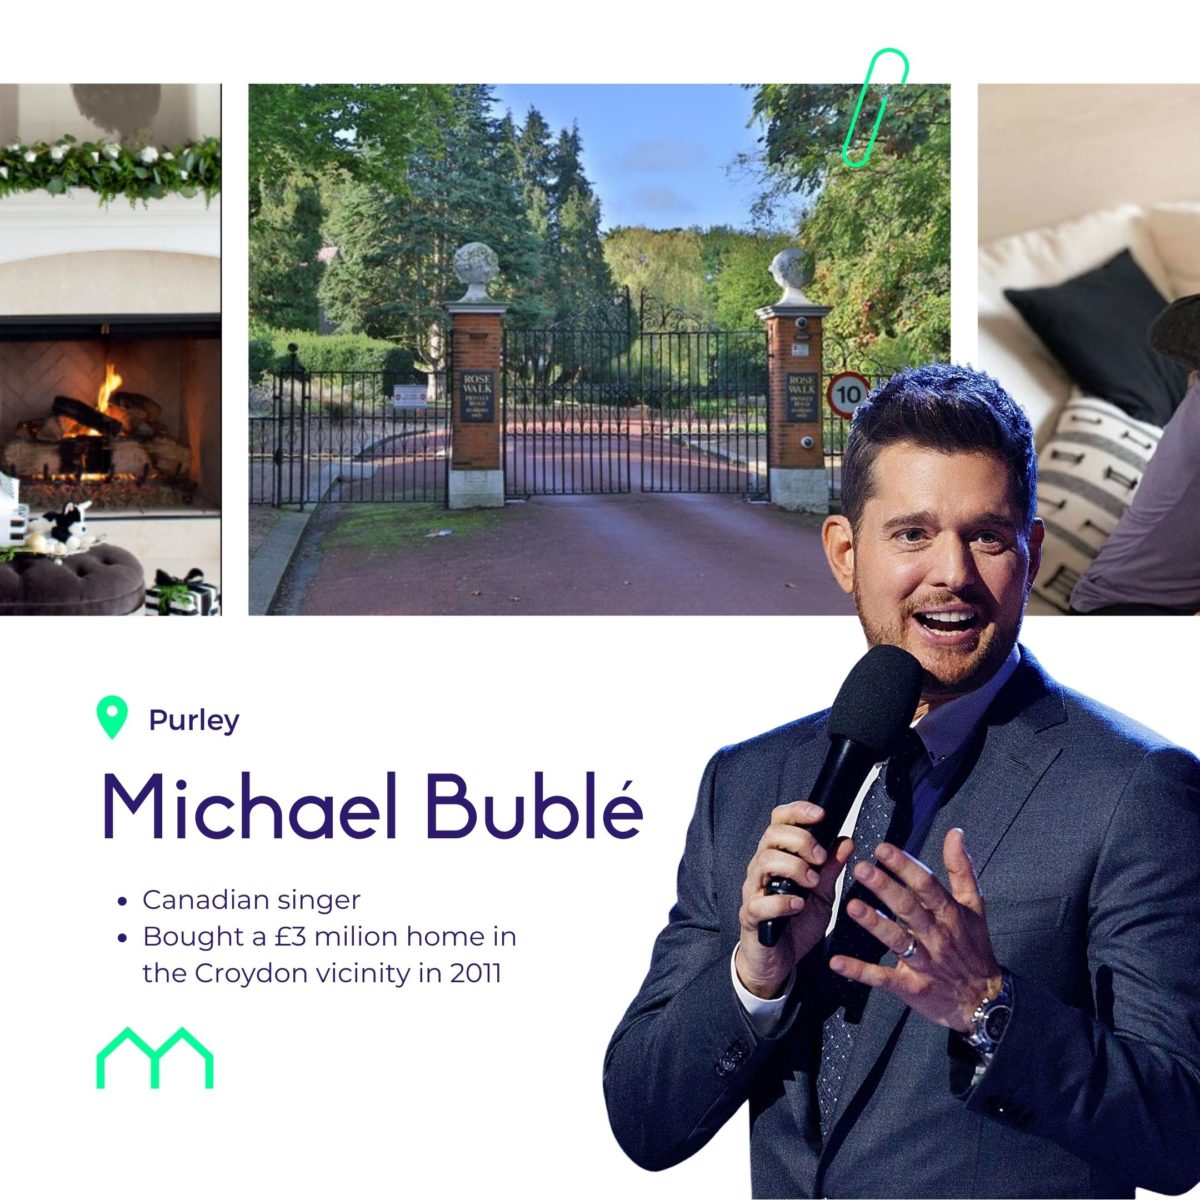 Michael Buble Croydon home